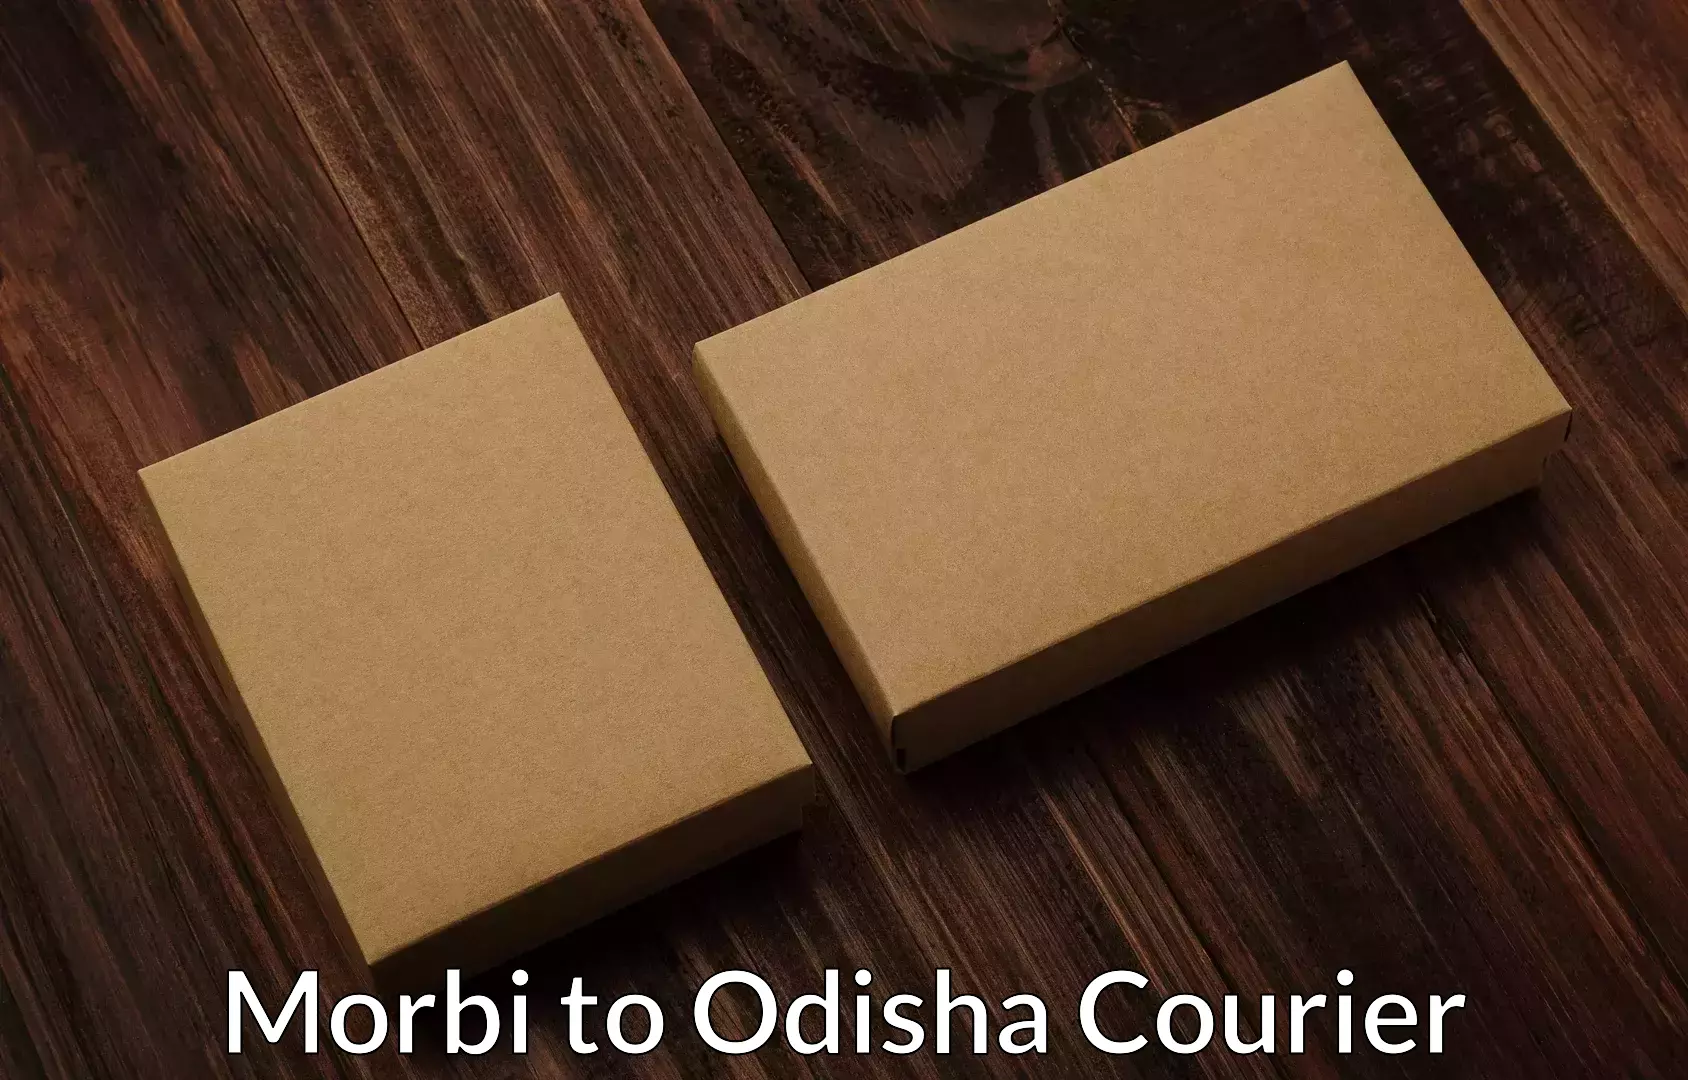 Household movers Morbi to Nayagarh